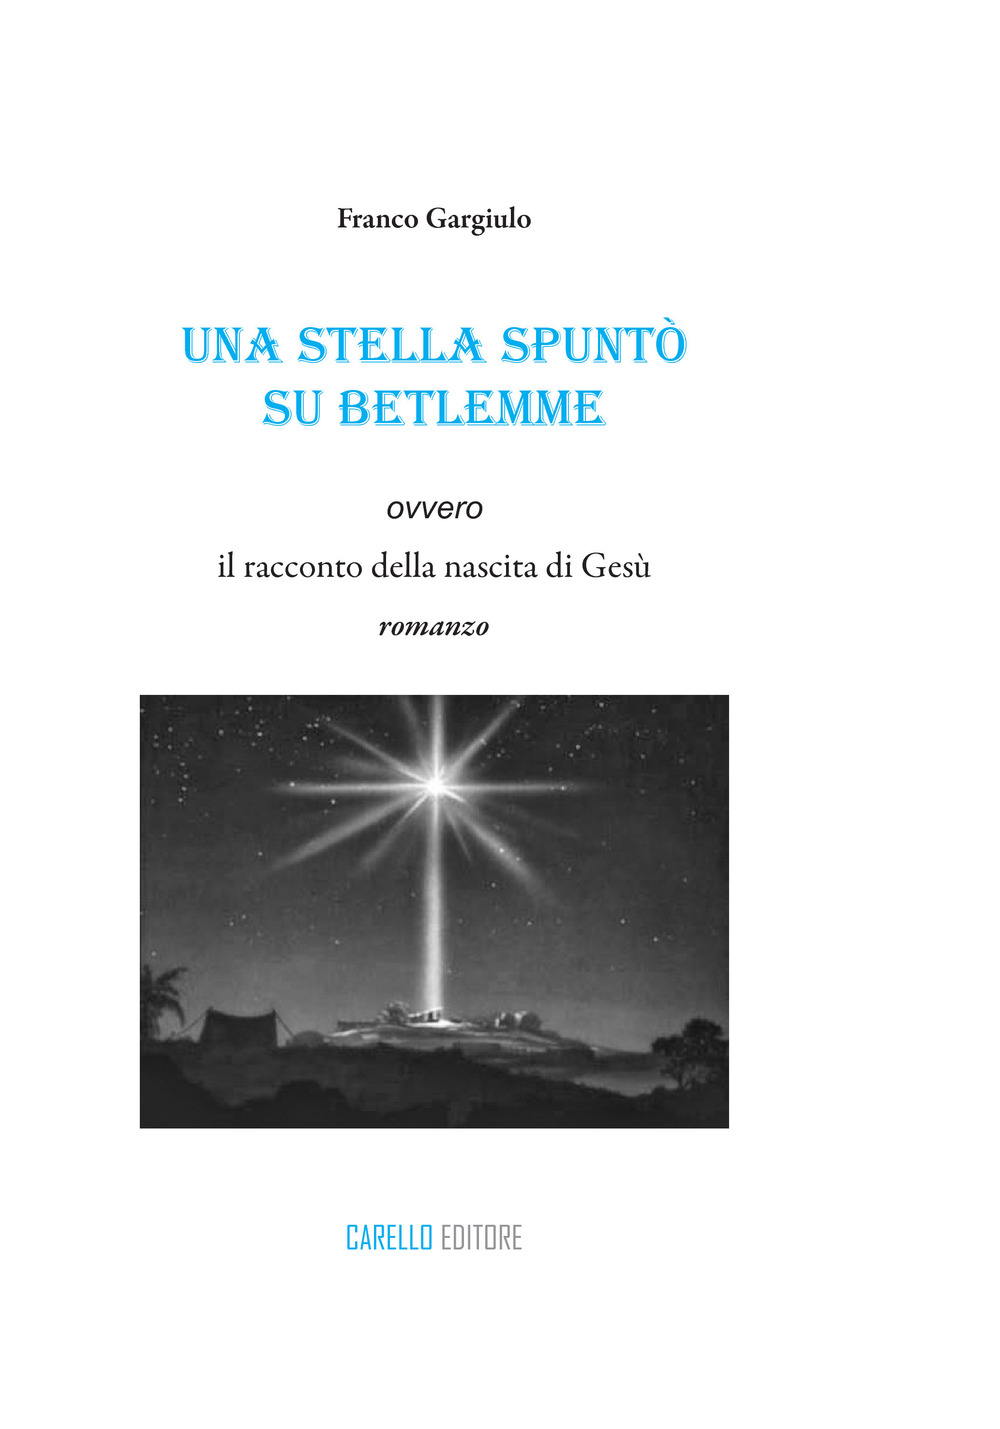 Una stella spuntò su Betlemme ovvero il racconto della nascita di Gesù